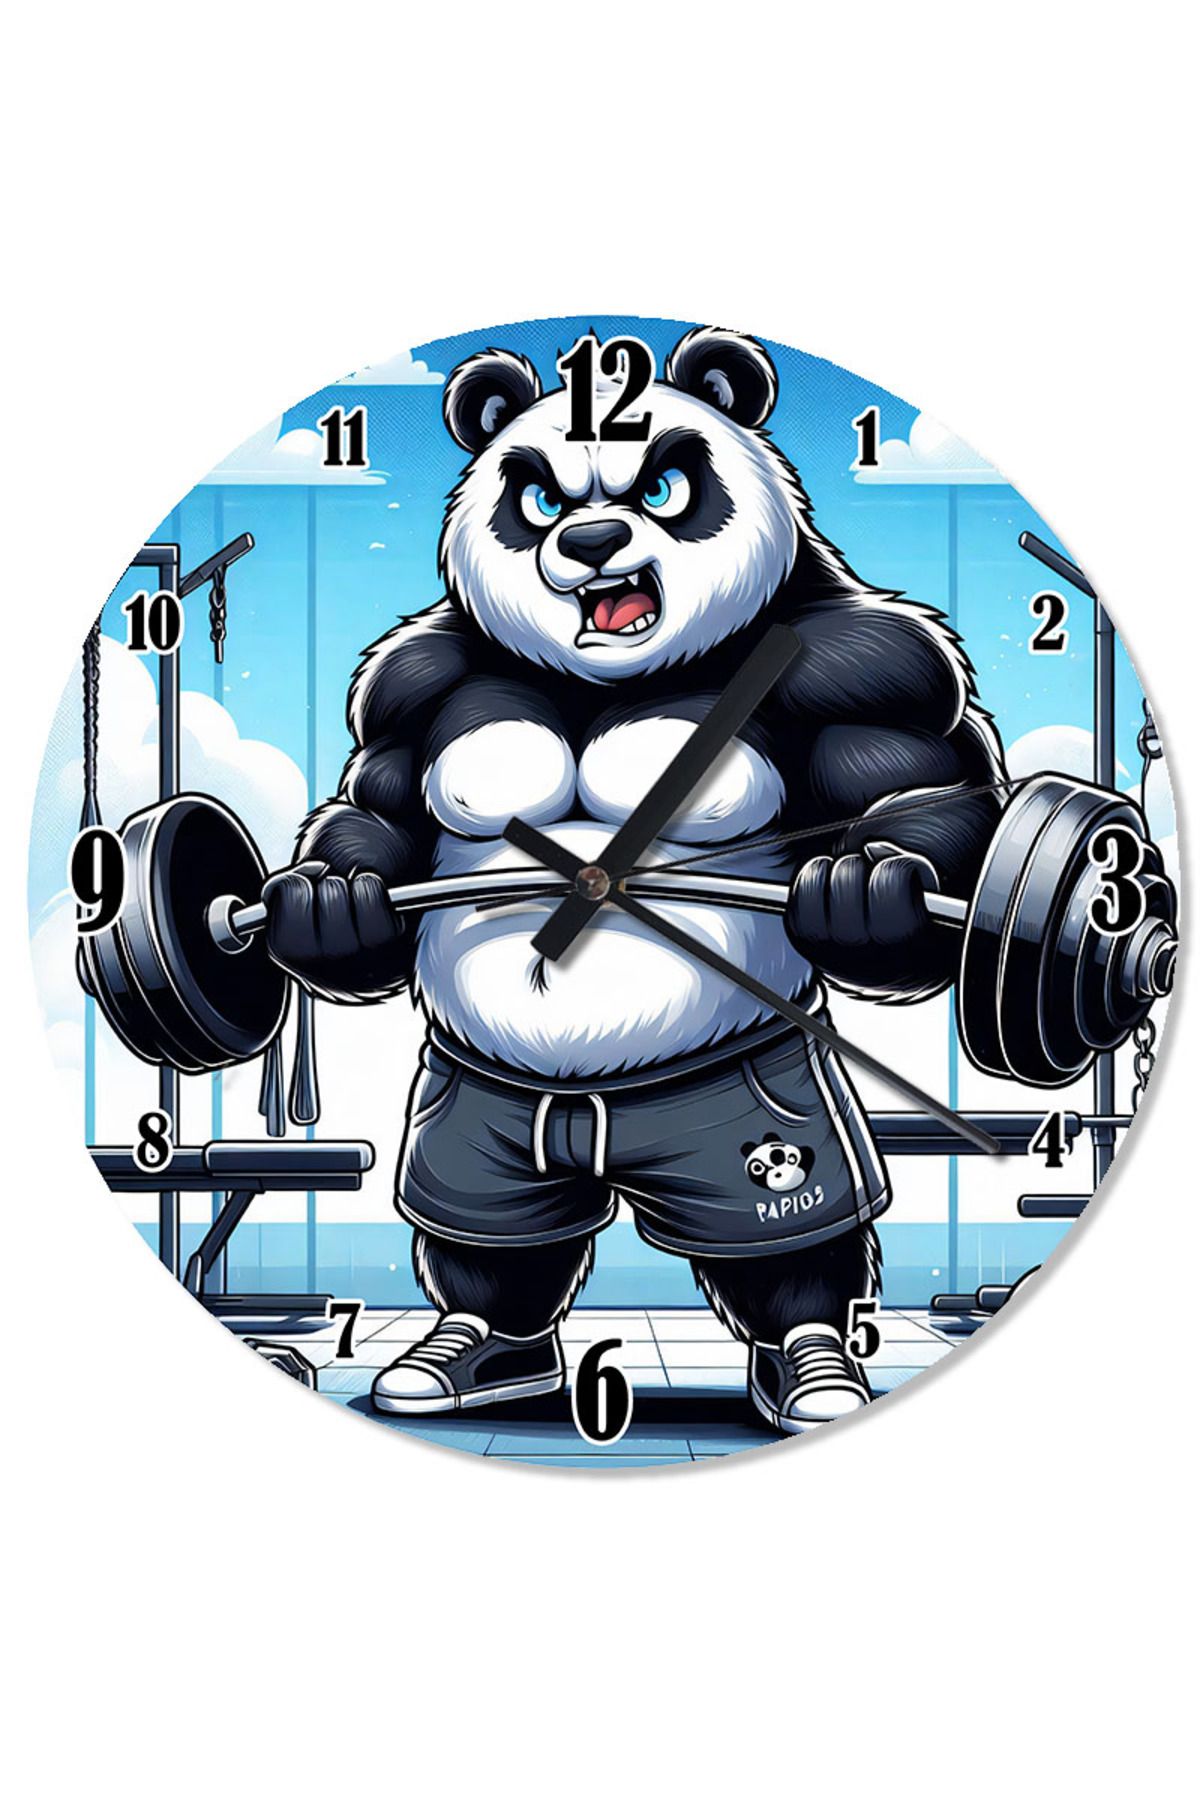 ekart Halter Kaldıran Panda Dekoratif Duvar Saati